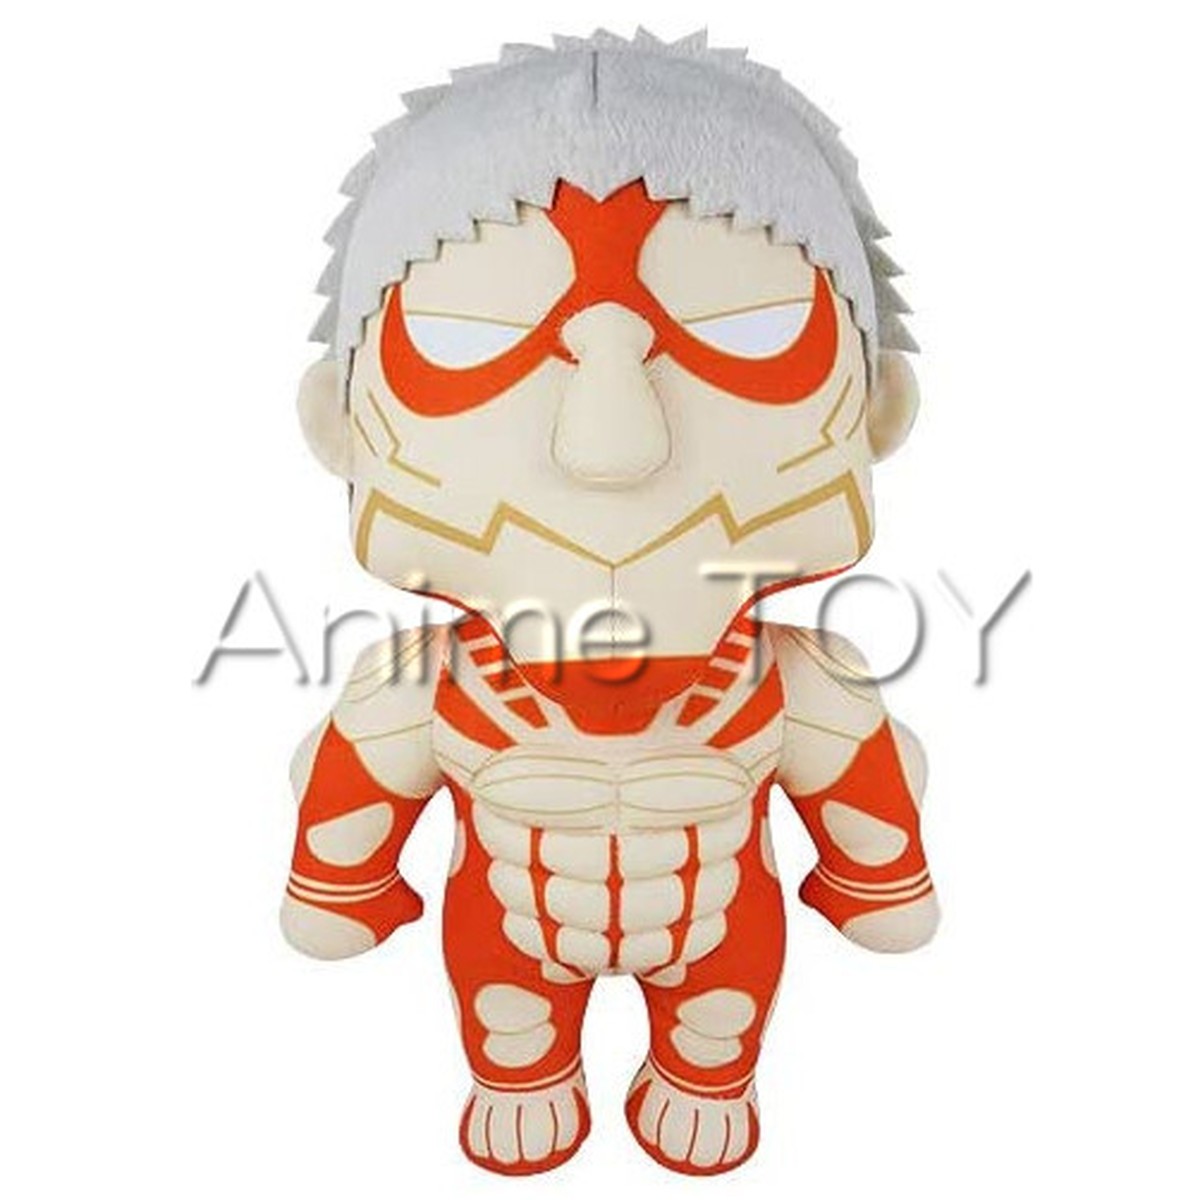 進撃の巨人 鎧の巨人 ライナー ぬいぐるみ 送料無料 Anime Toy 海外 アニメ キャラクター グッズ販売